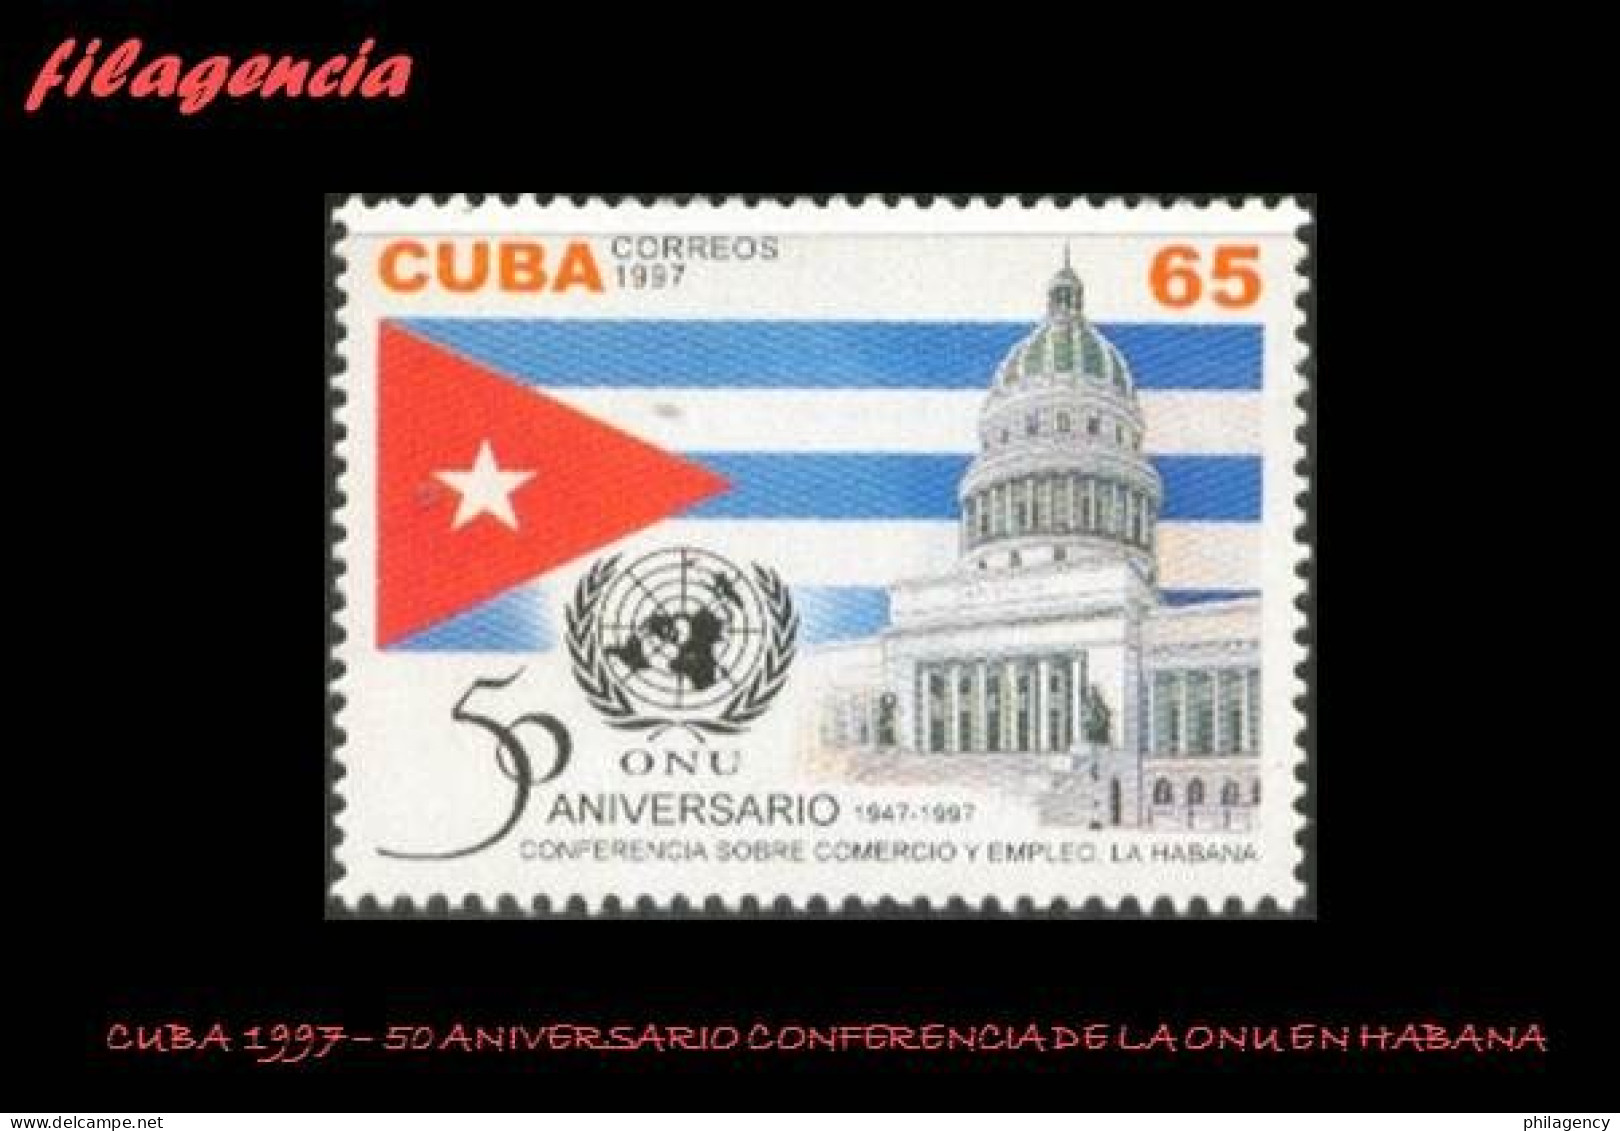 CUBA MINT. 1997-28 50 AÑOS DE LA CONFERENCIA DE NACIONES UNIDAS SOBRE COMERCIO & EMPLEO EN LA HABANA - Unused Stamps